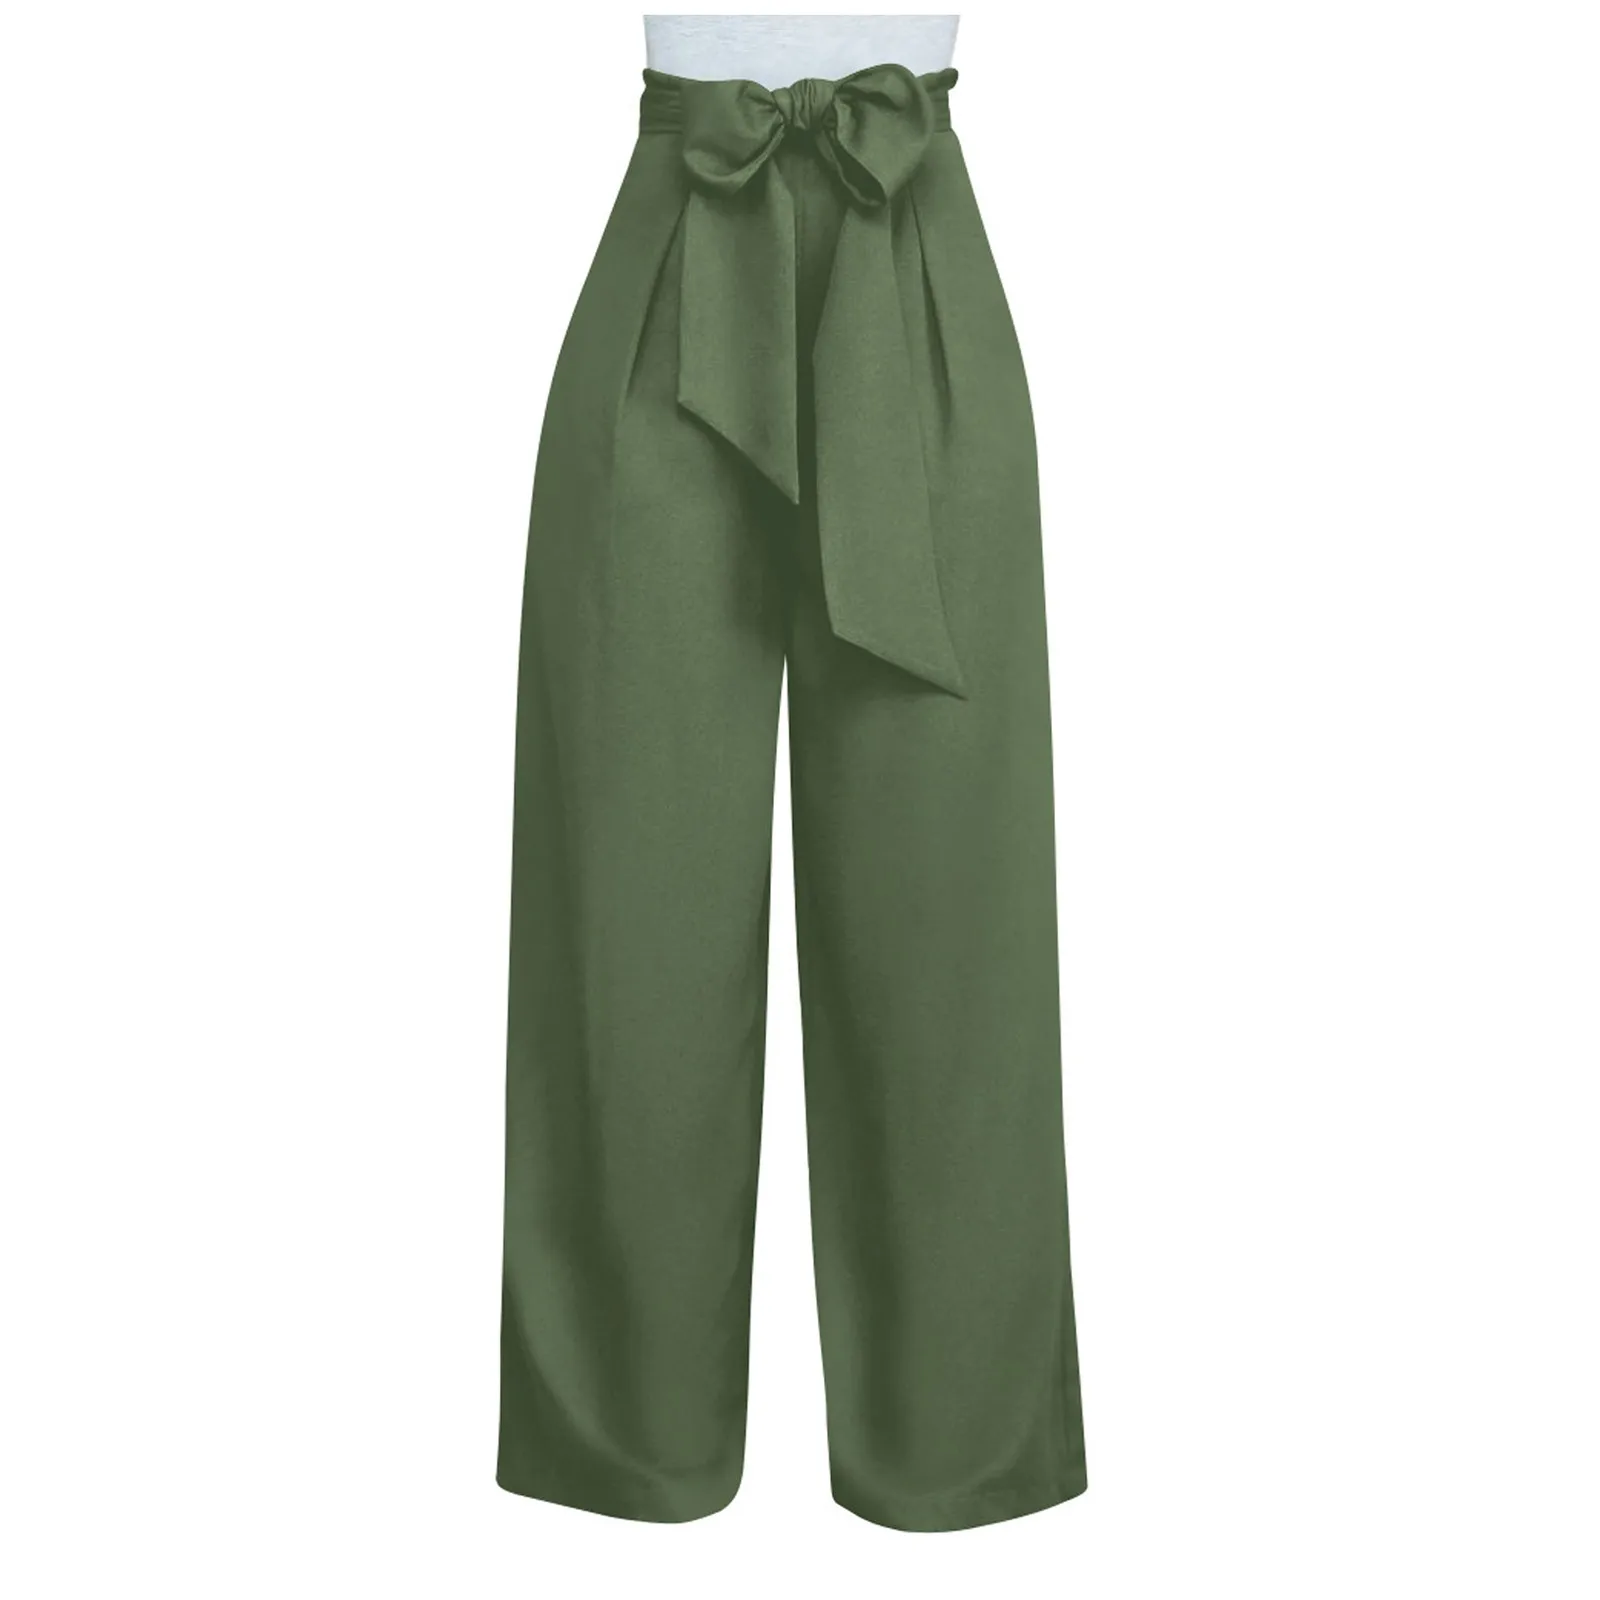 Pantalones largos rectos informales para mujer pantalones ajustados AA87 Color sólido sueltoscómodos pantalones de pierna ancha